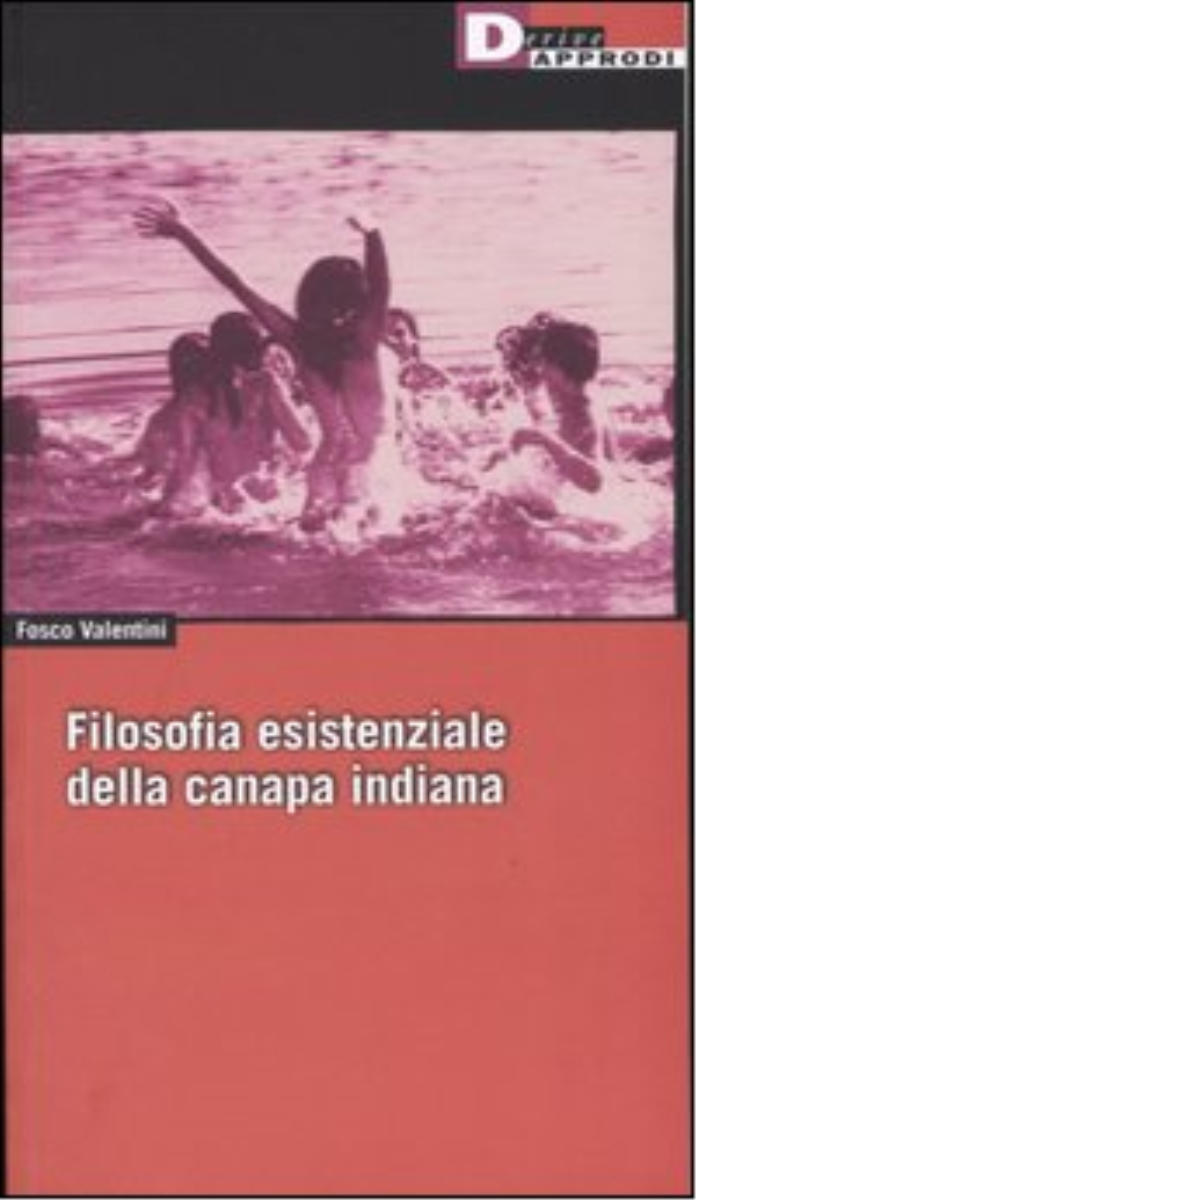 FILOSOFIA ESISTENZIALE DELLA CANAPA INDIANA di FOSCO VALENTINI - 2004